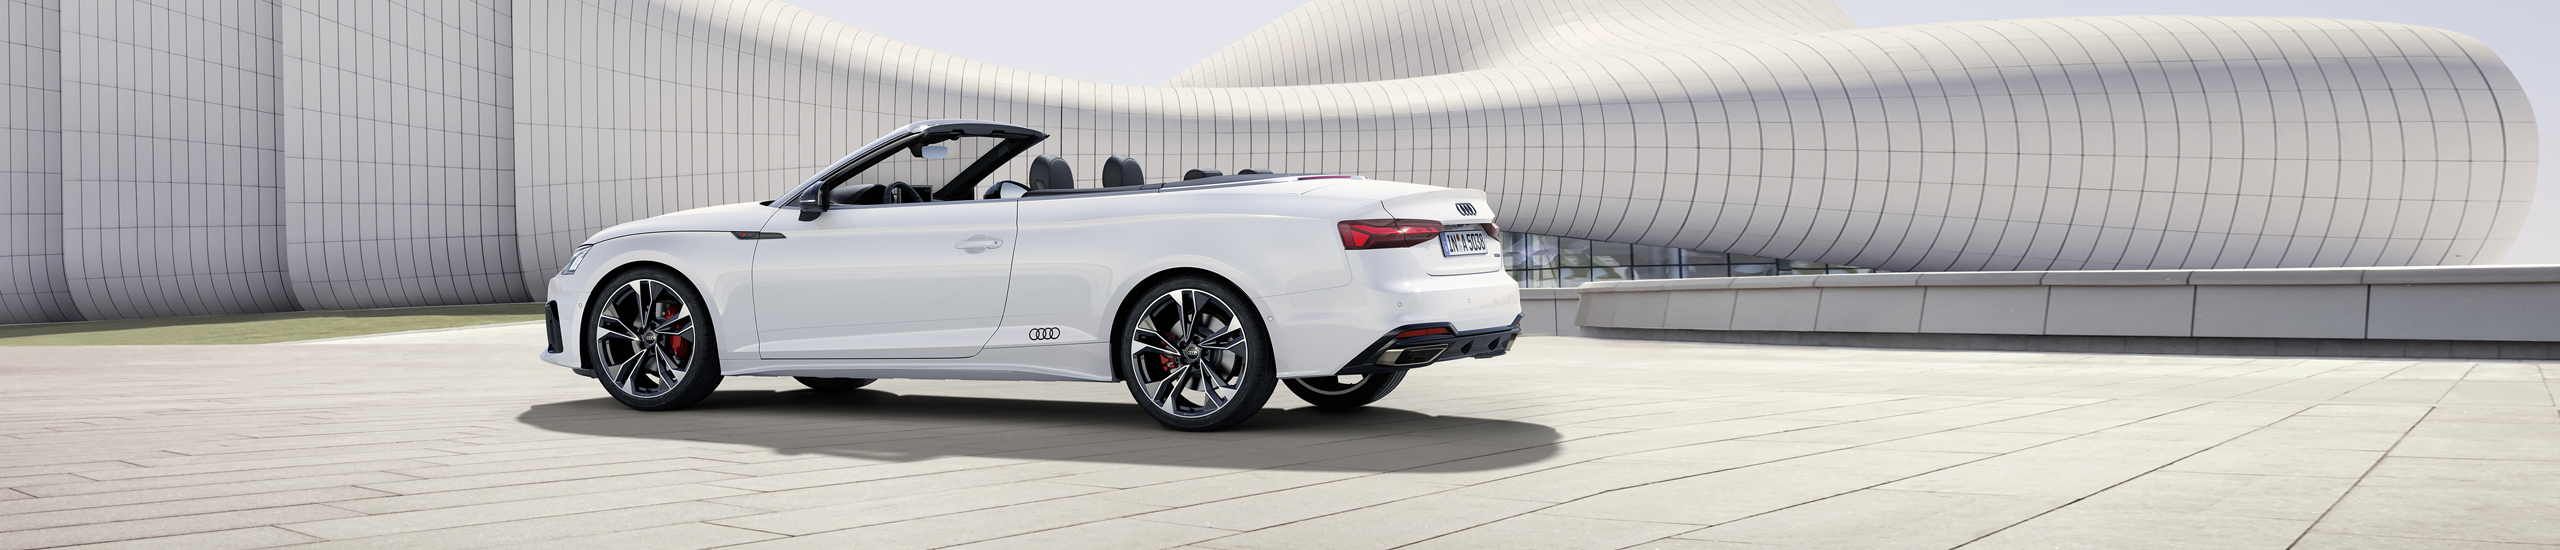 Geniet van de aangename rijbeleving in de nieuwe Audi A5 Cabriolet, met name met geopend dak.